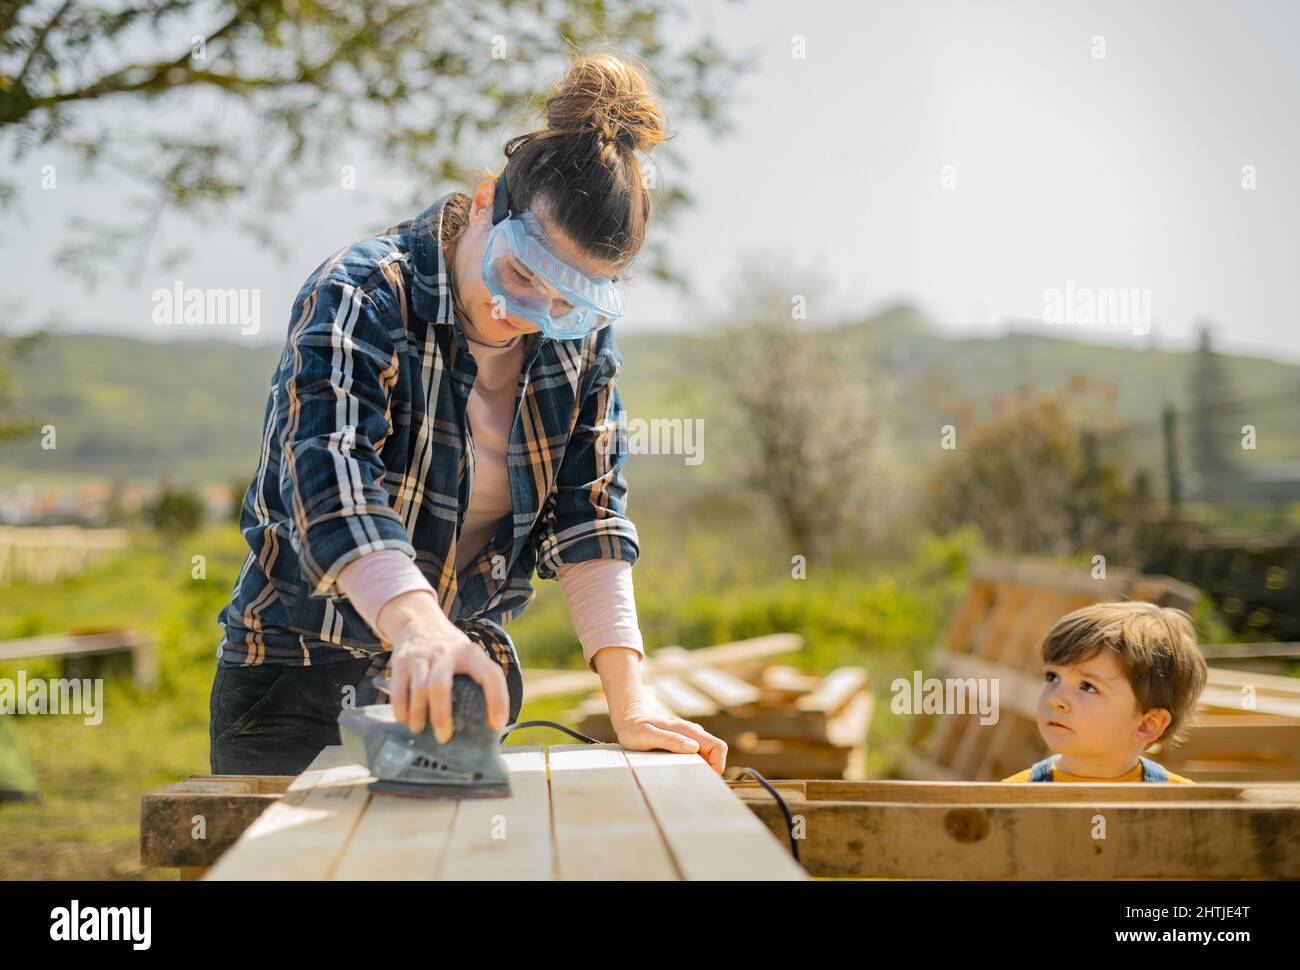 Femme concentrée dans des verres de protection ponçant des planches en bois avec une ponceuse électrique spéciale tout en se tenant près de mignon garçon dans la campagne Banque D'Images